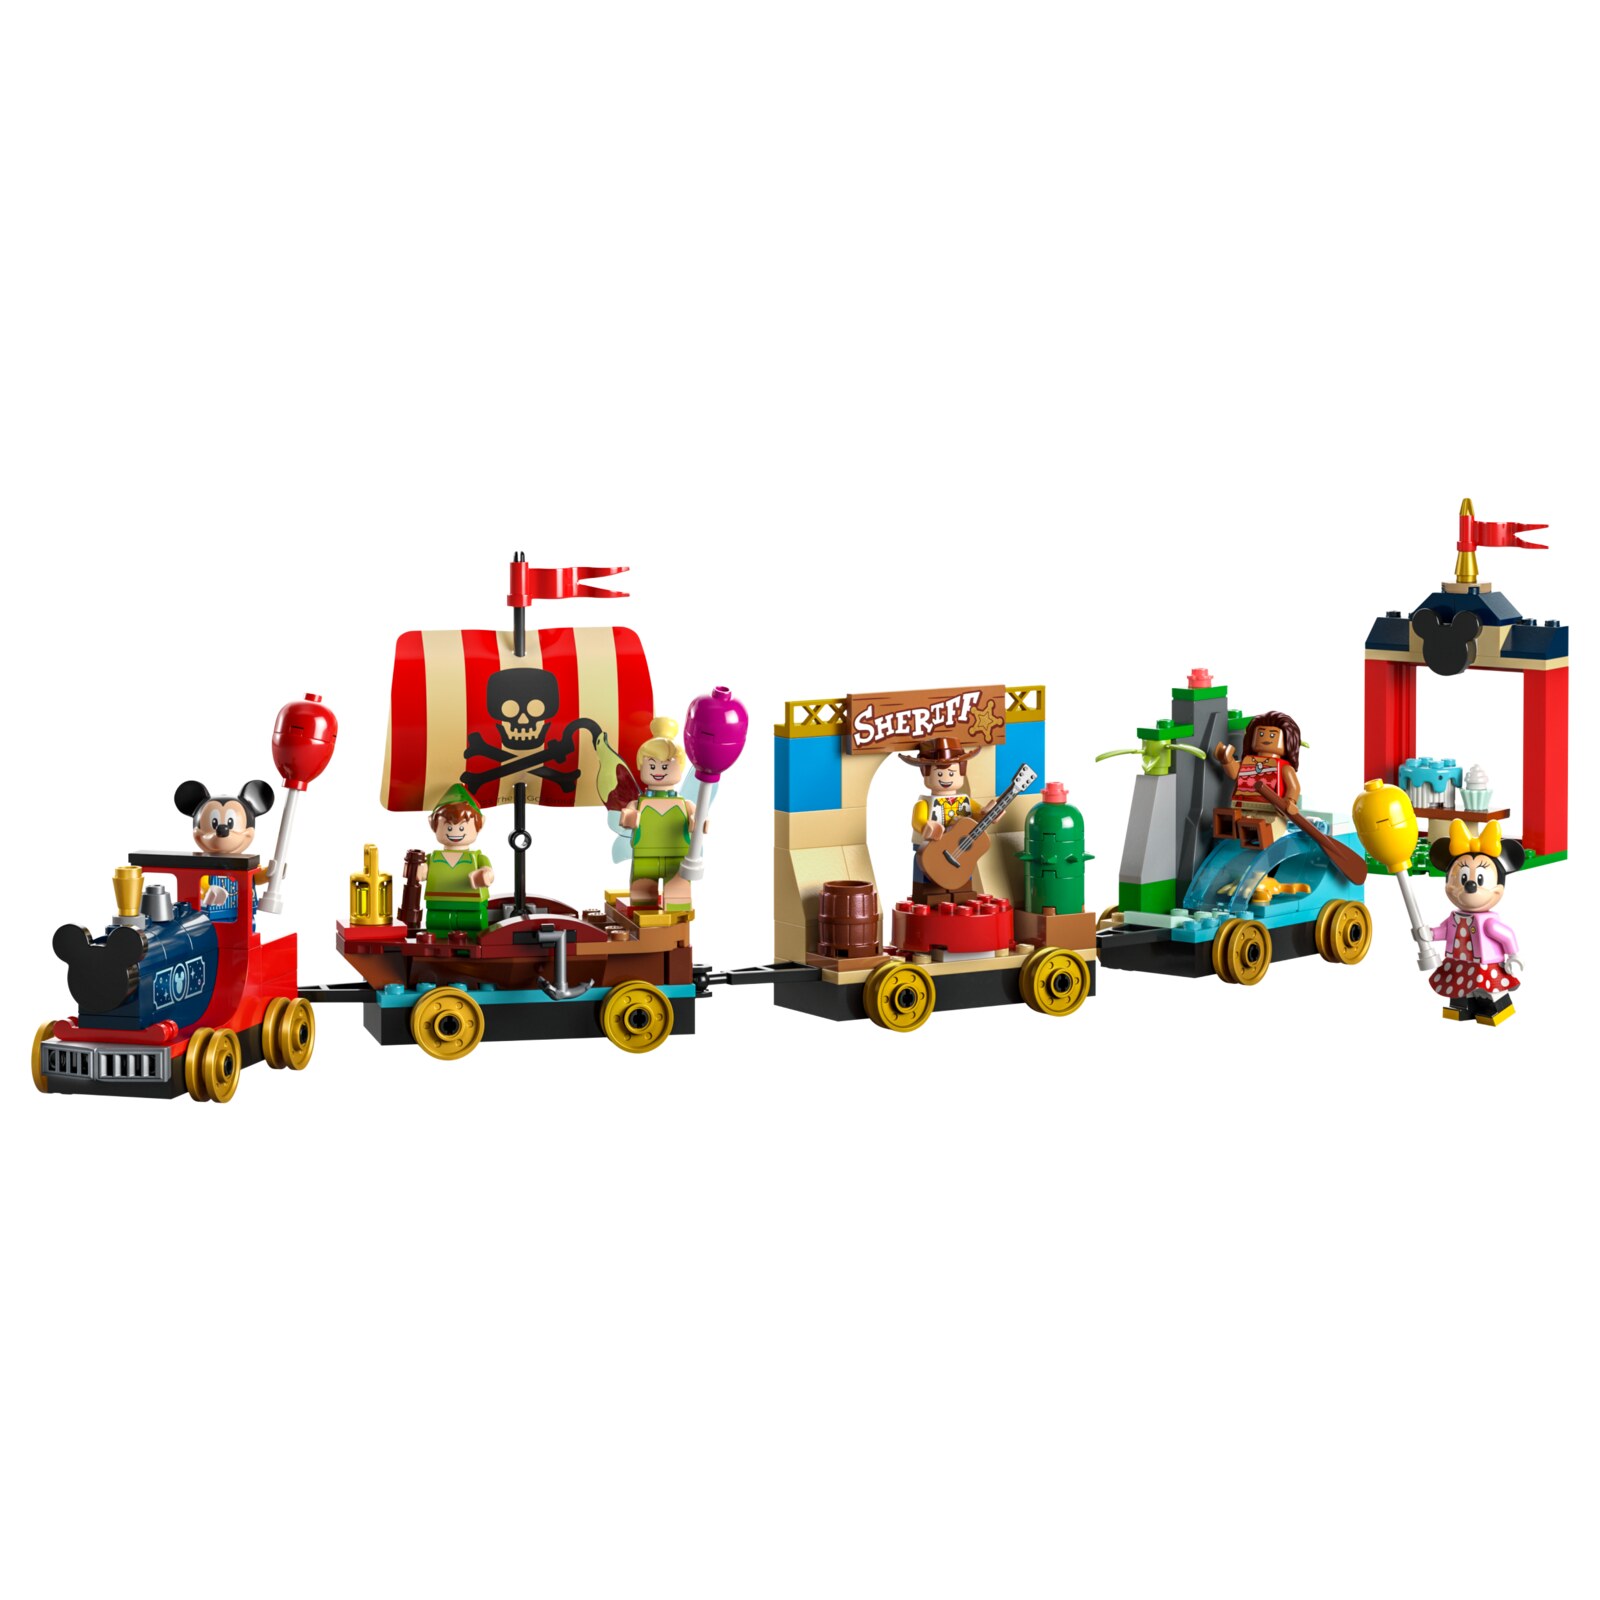 Конструктор LEGO Disney Праздничный поезд Диснея, 200 деталей, 43212 питер пэн и веселье в нетландии